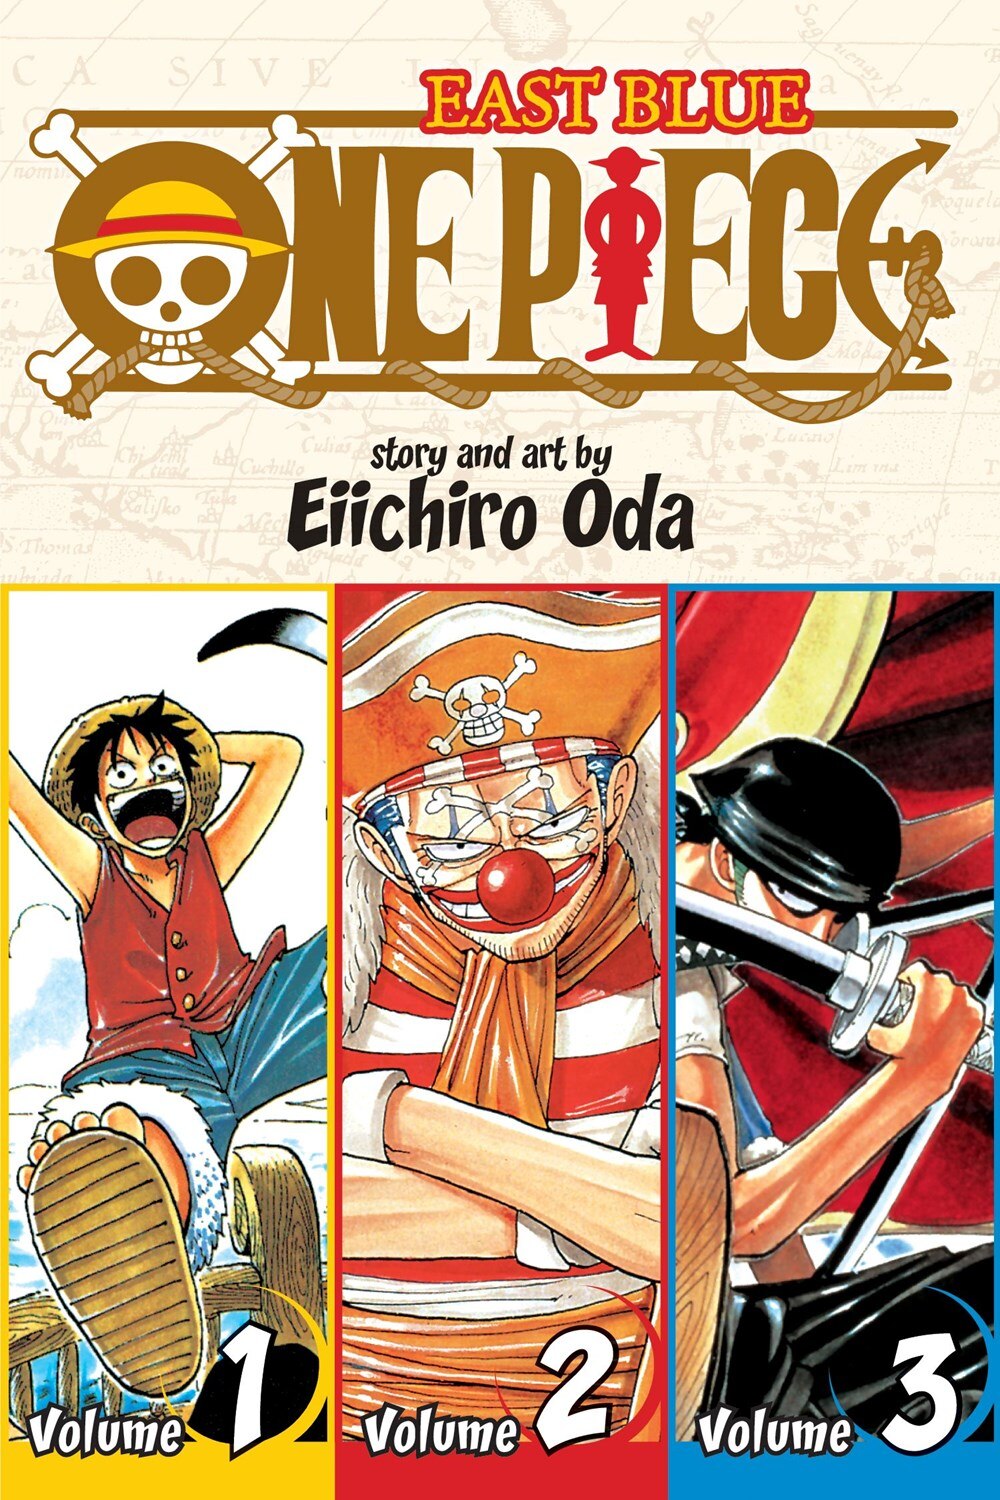 One Piece (Omnibus Edition)  Vol. 1  1: Includes Vols. 1  2 & 3